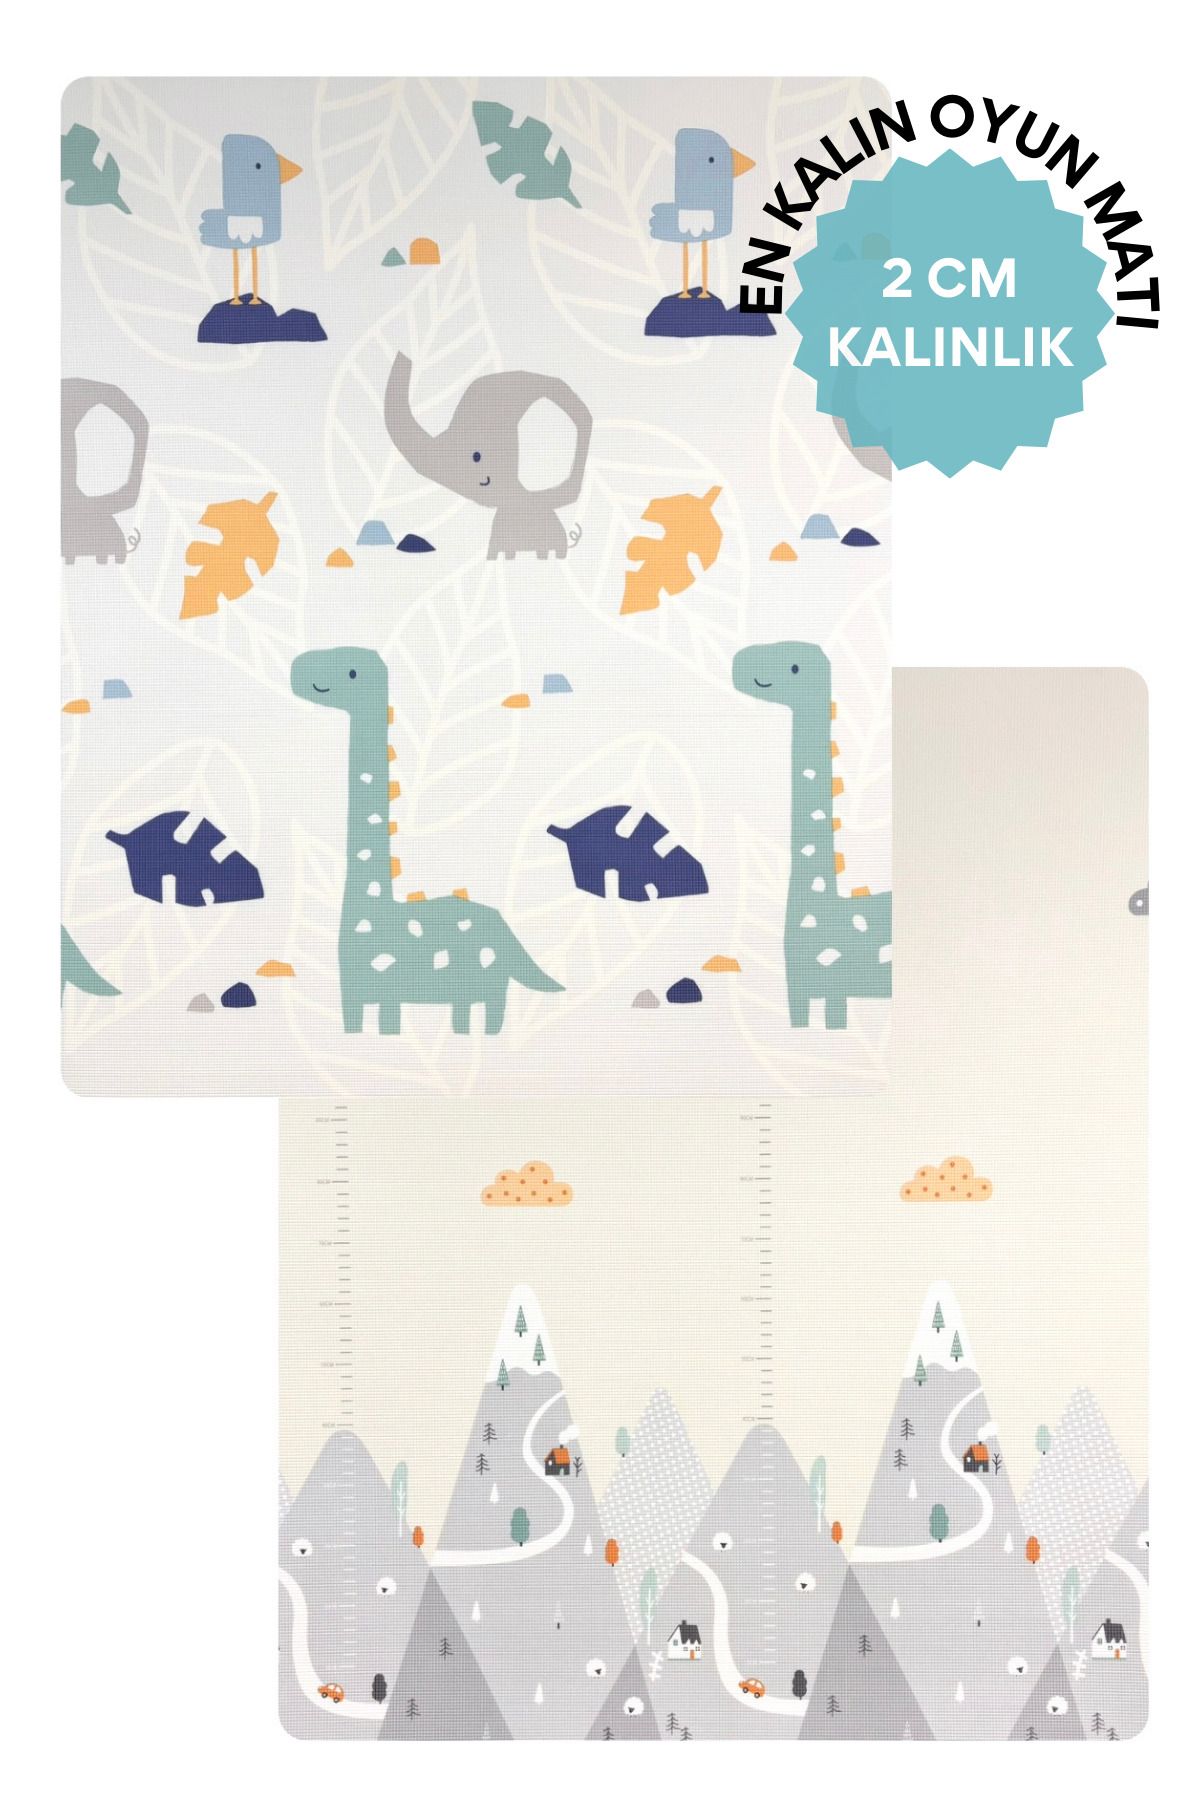 Tummymat Nordic Dino Rollmat 2cm Kalınlık Çift Taraflı Bebek Çocuk Köpük Oyun Matı/halısı 180cm X 150cm X 2cm